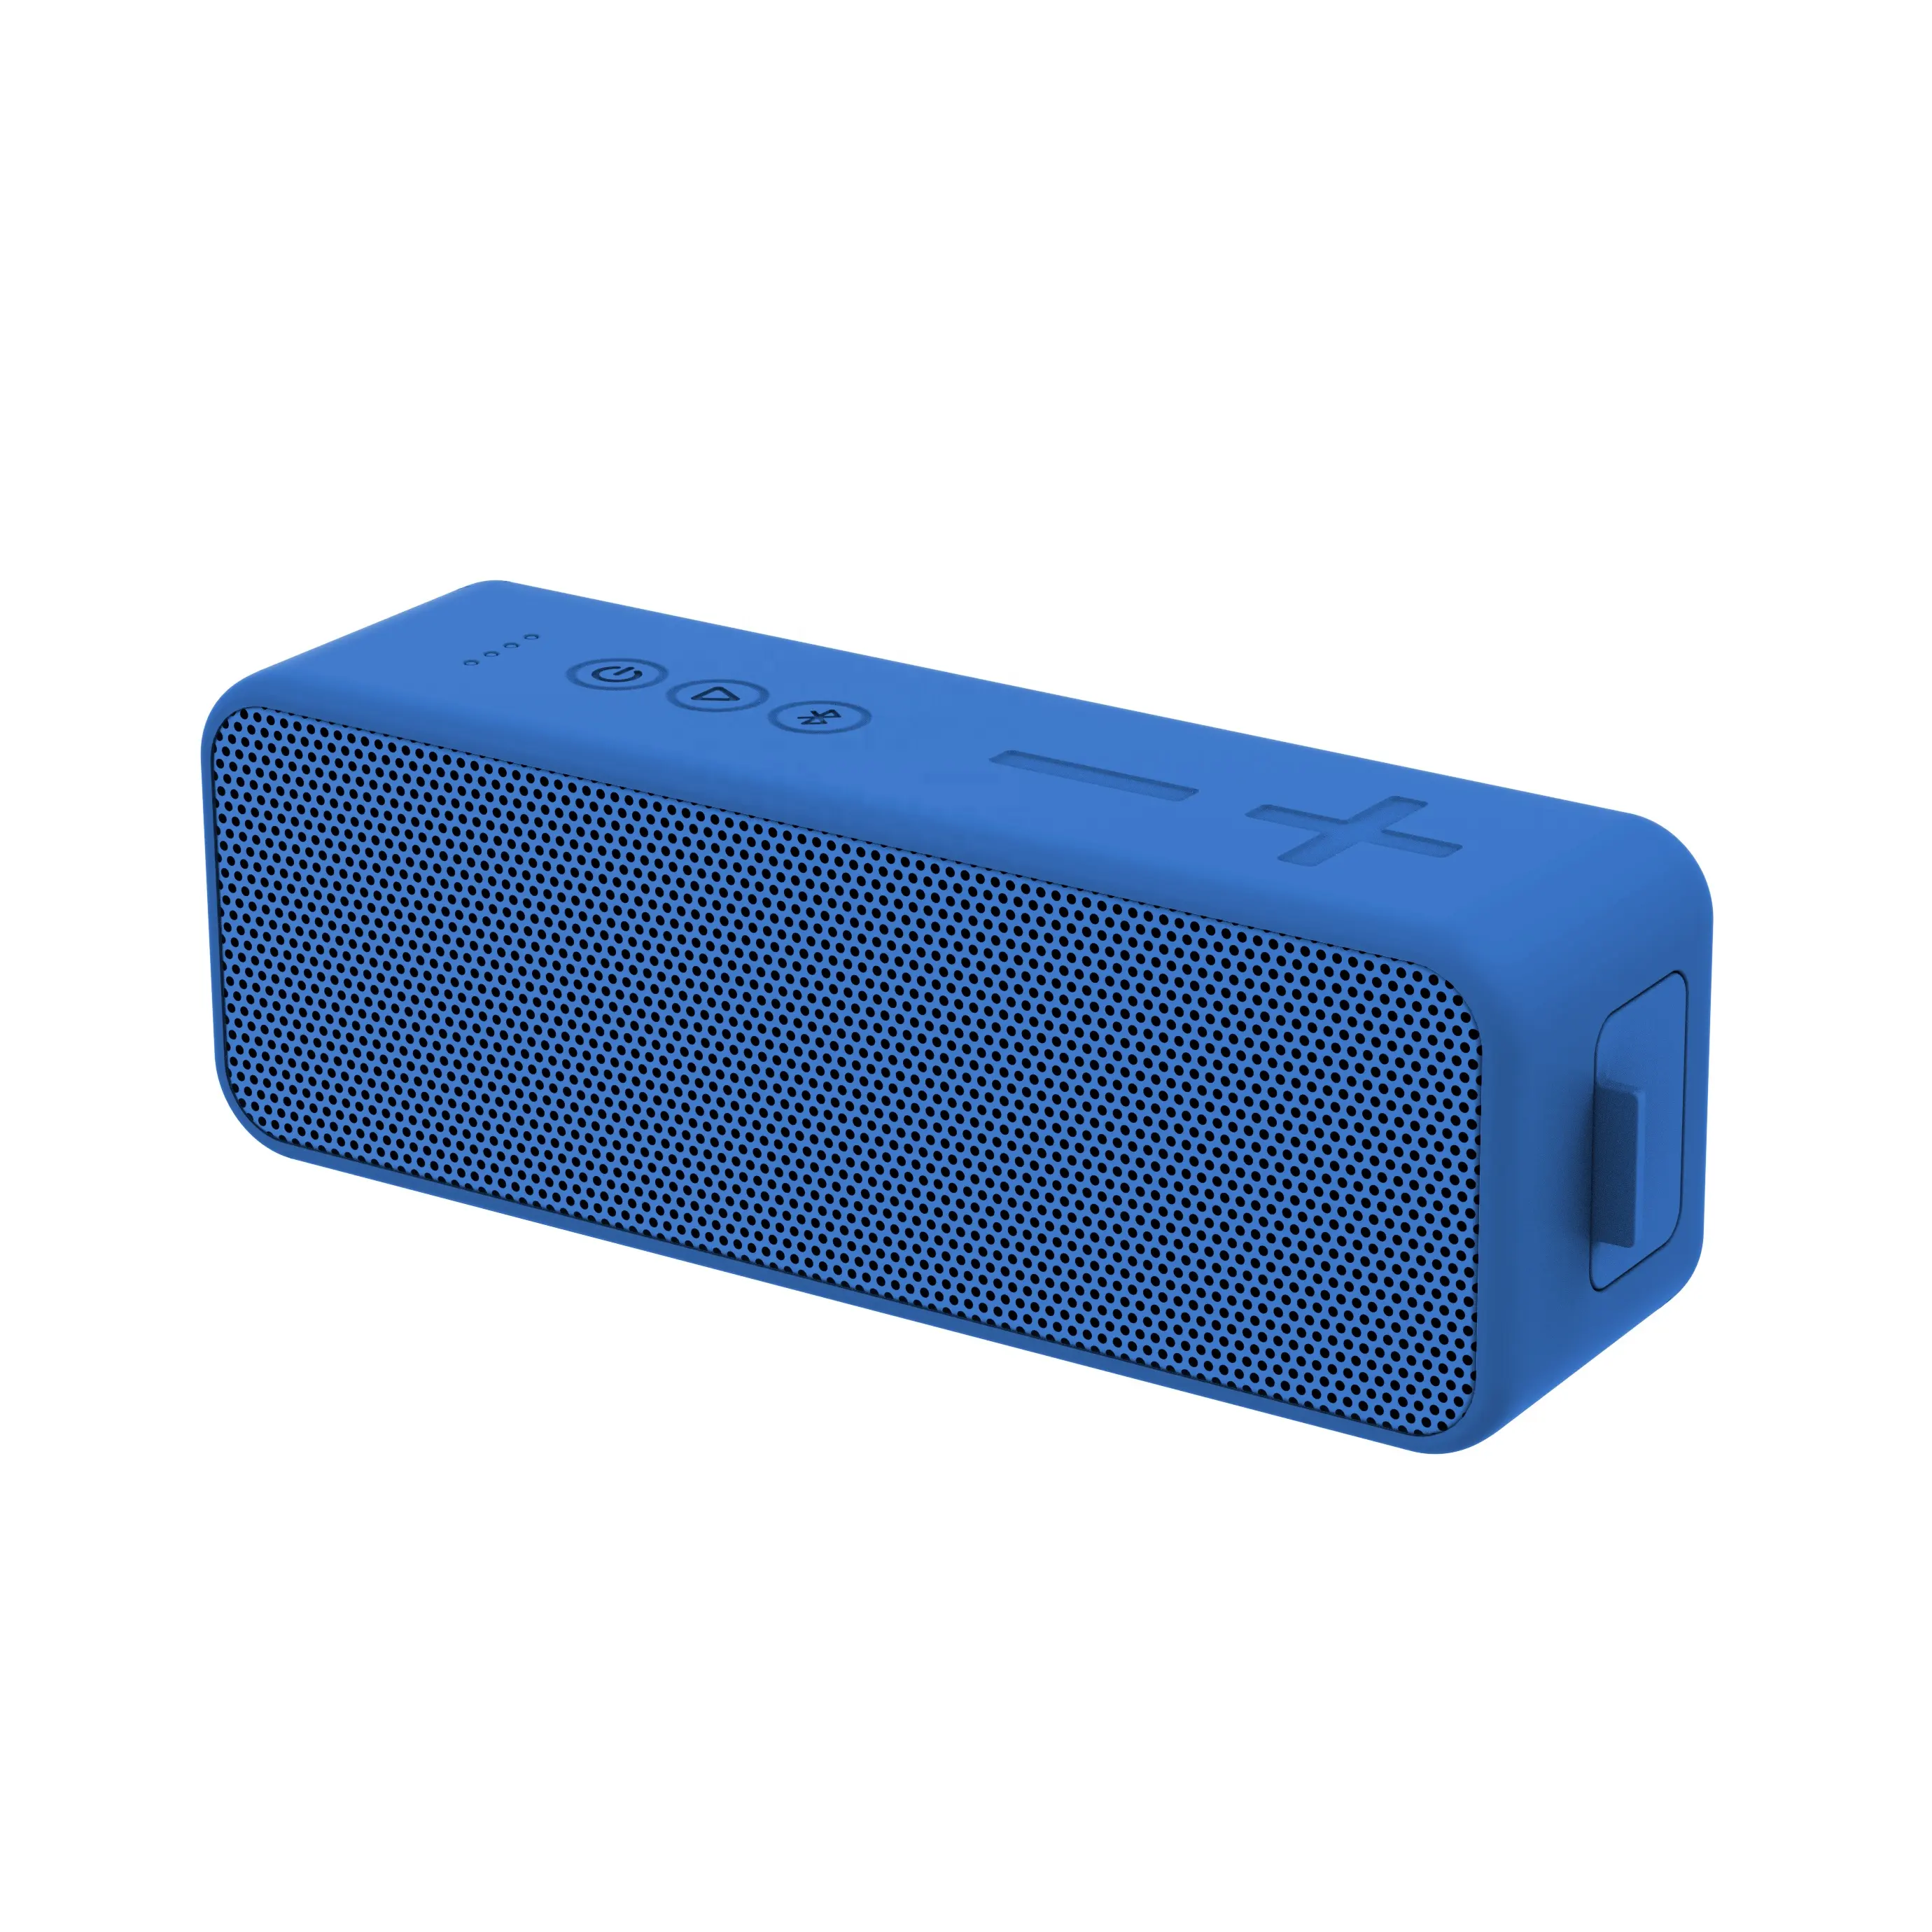 Musikbox speaker nirkabel bluetooth, speaker nirkabel ukuran Tengah 10w tahan air dengan baterai 2200mah